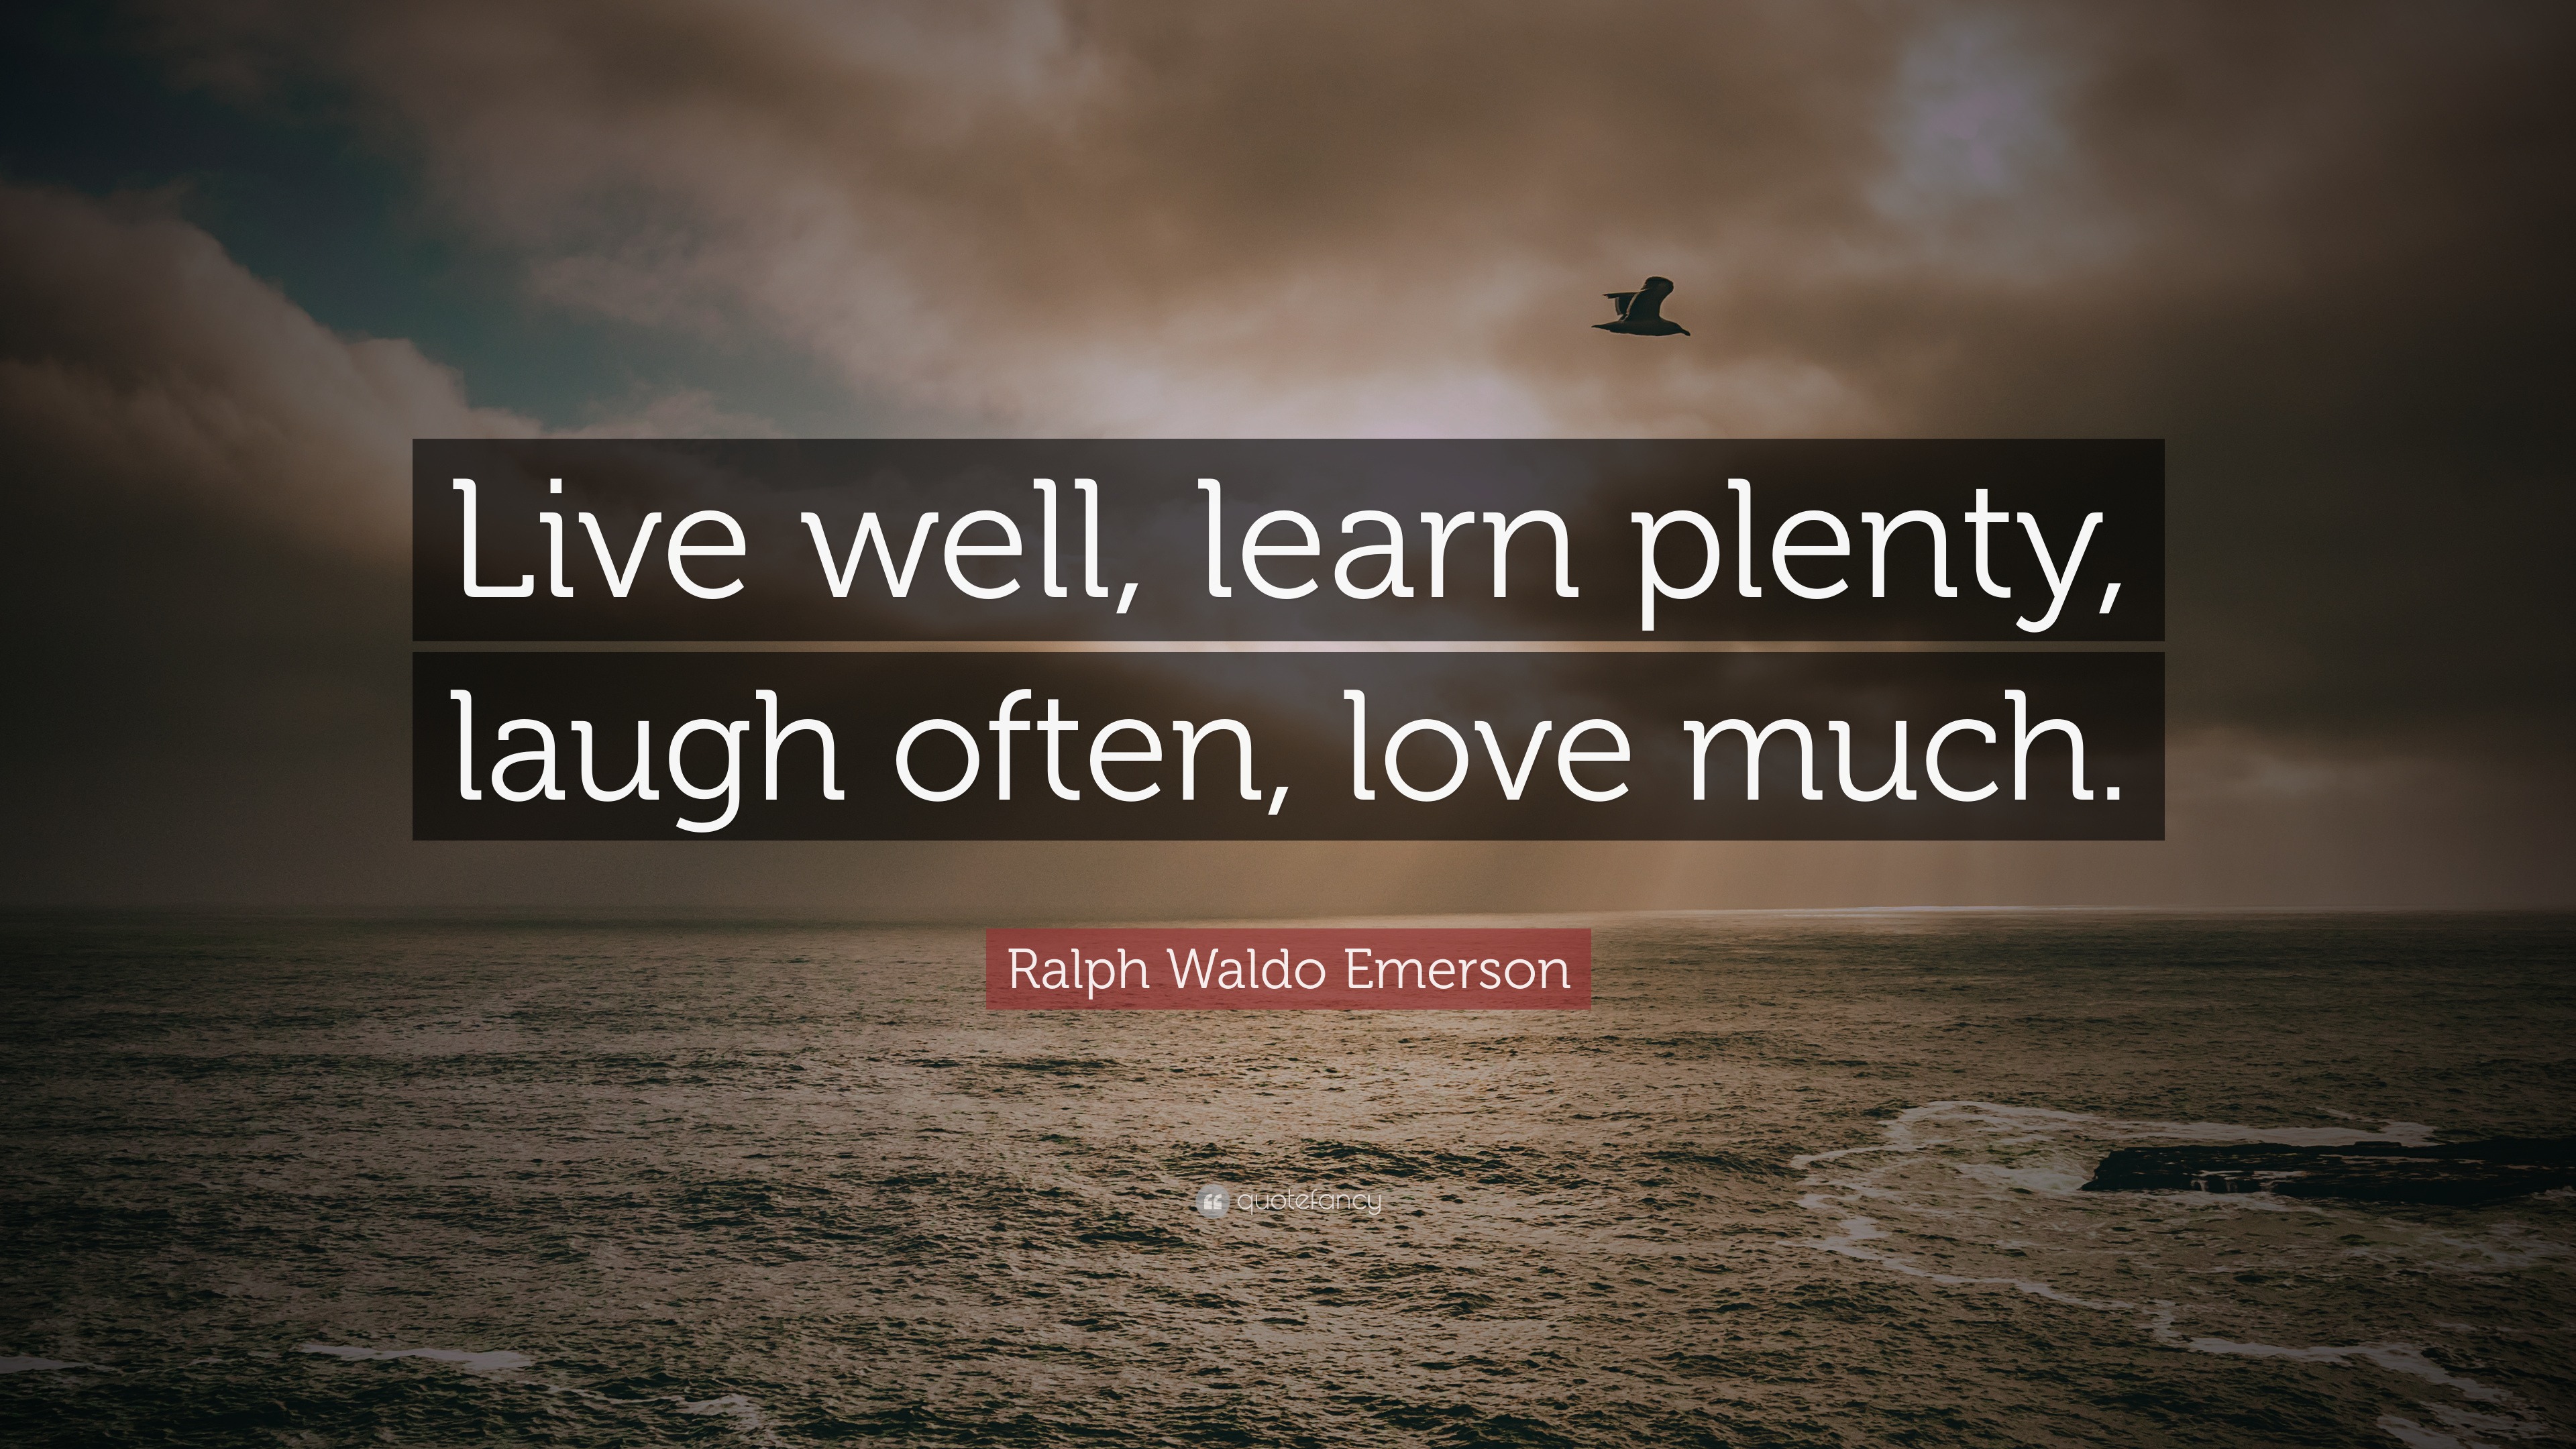 Ralph Waldo Emerson Quote “Live well learn plenty laugh often love